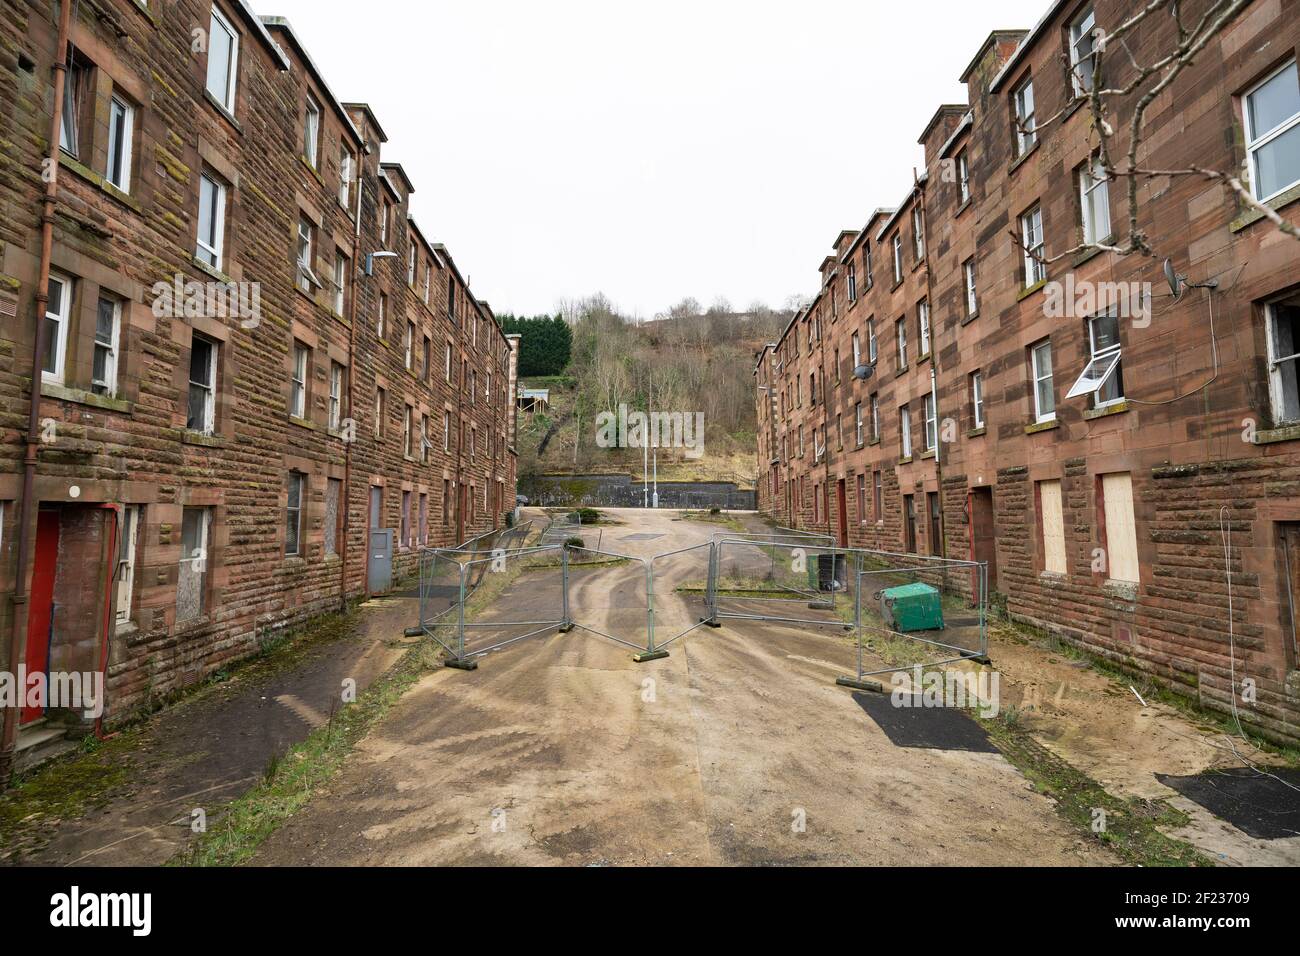 Blick auf verödlte Wohnhäuser im Clune Park in Port Glasgow, Inverclyde. Mietshäuser sollen abgerissen und saniert werden. Schottland, Großbritannien Stockfoto